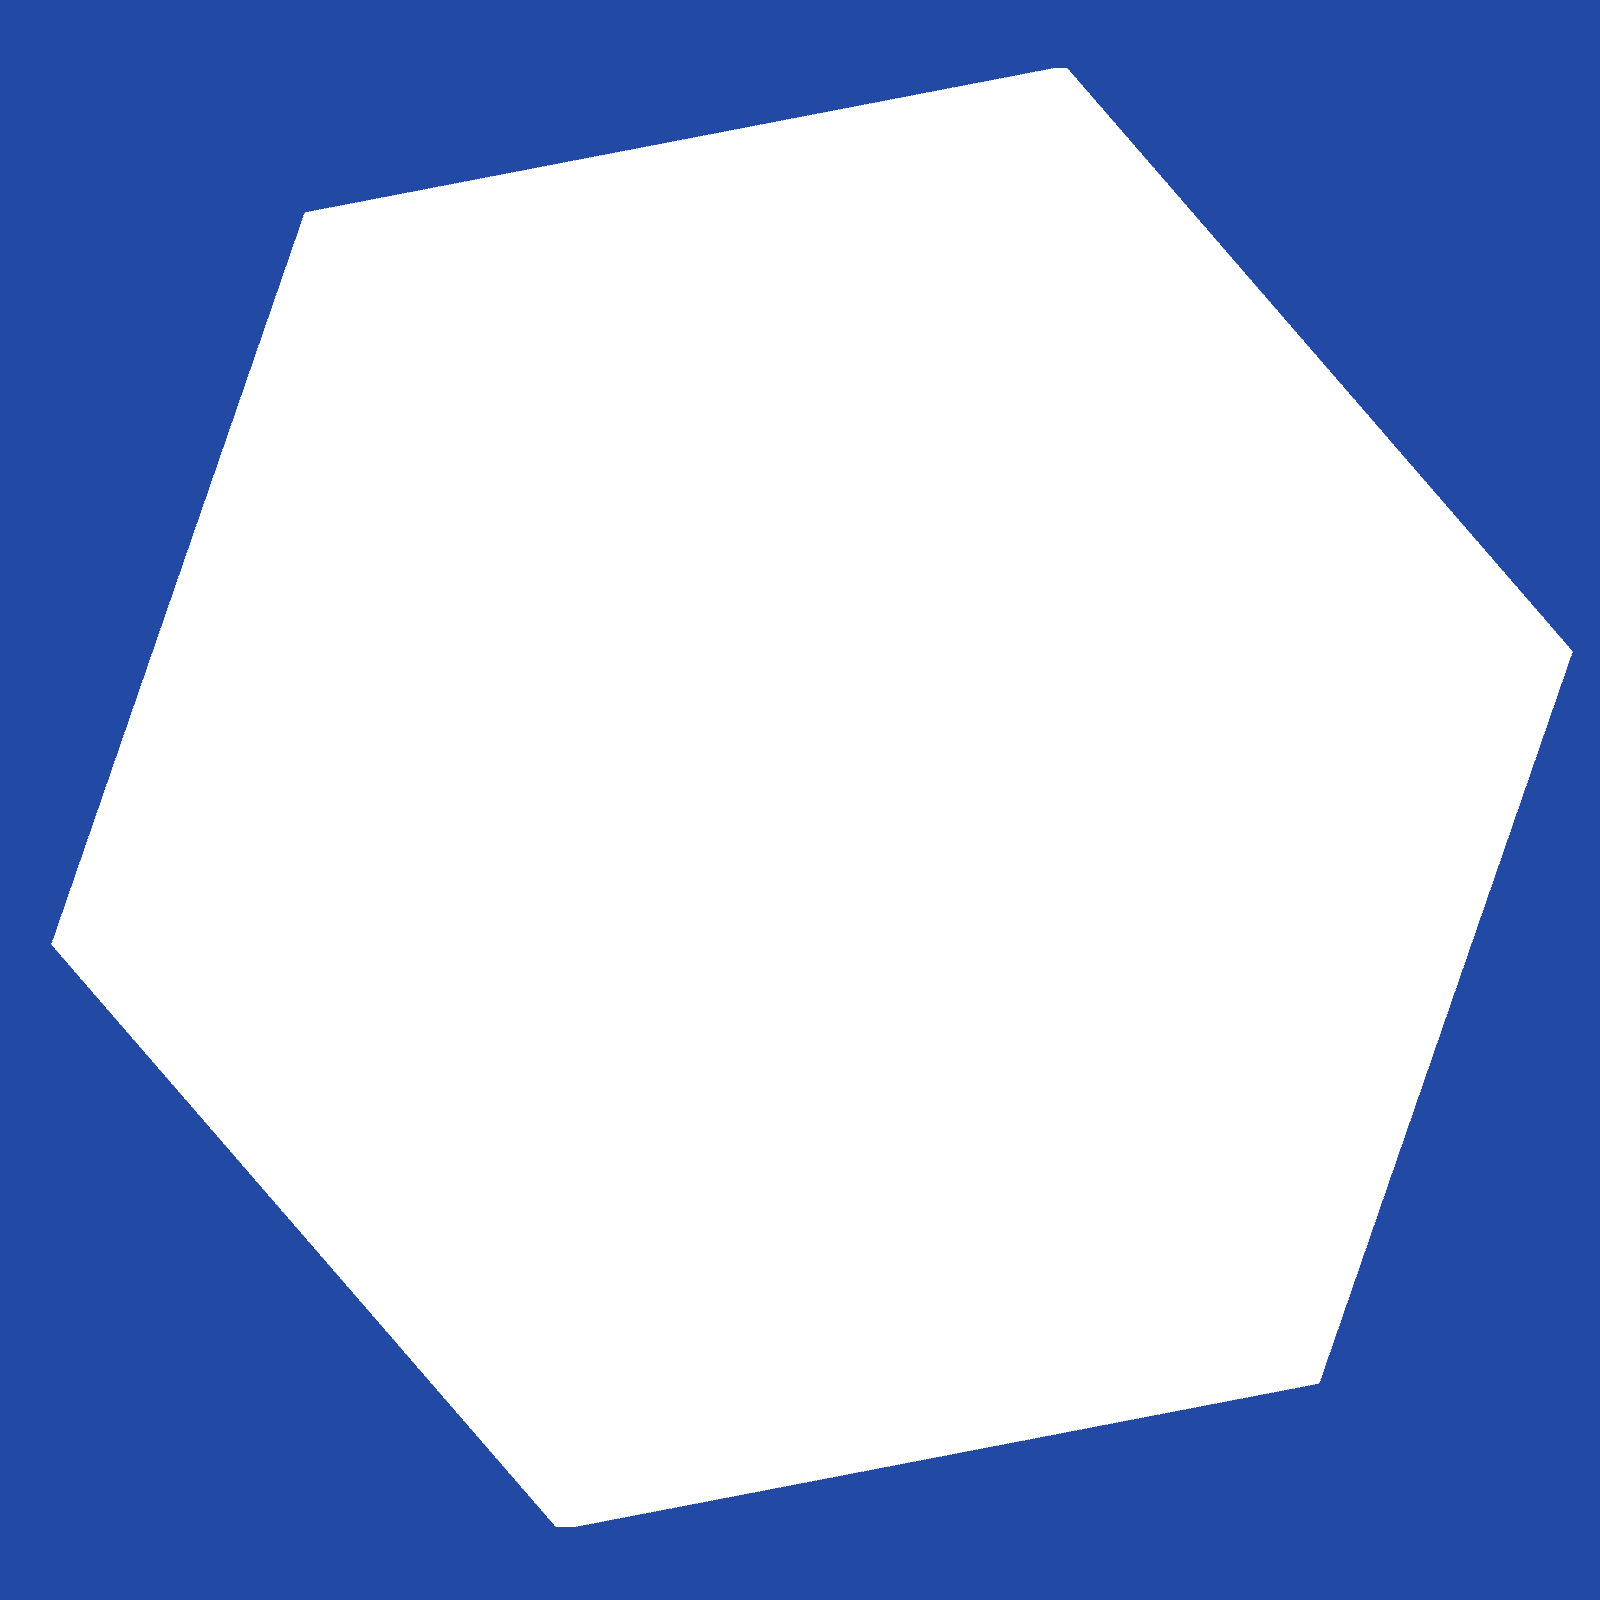 A hexagon